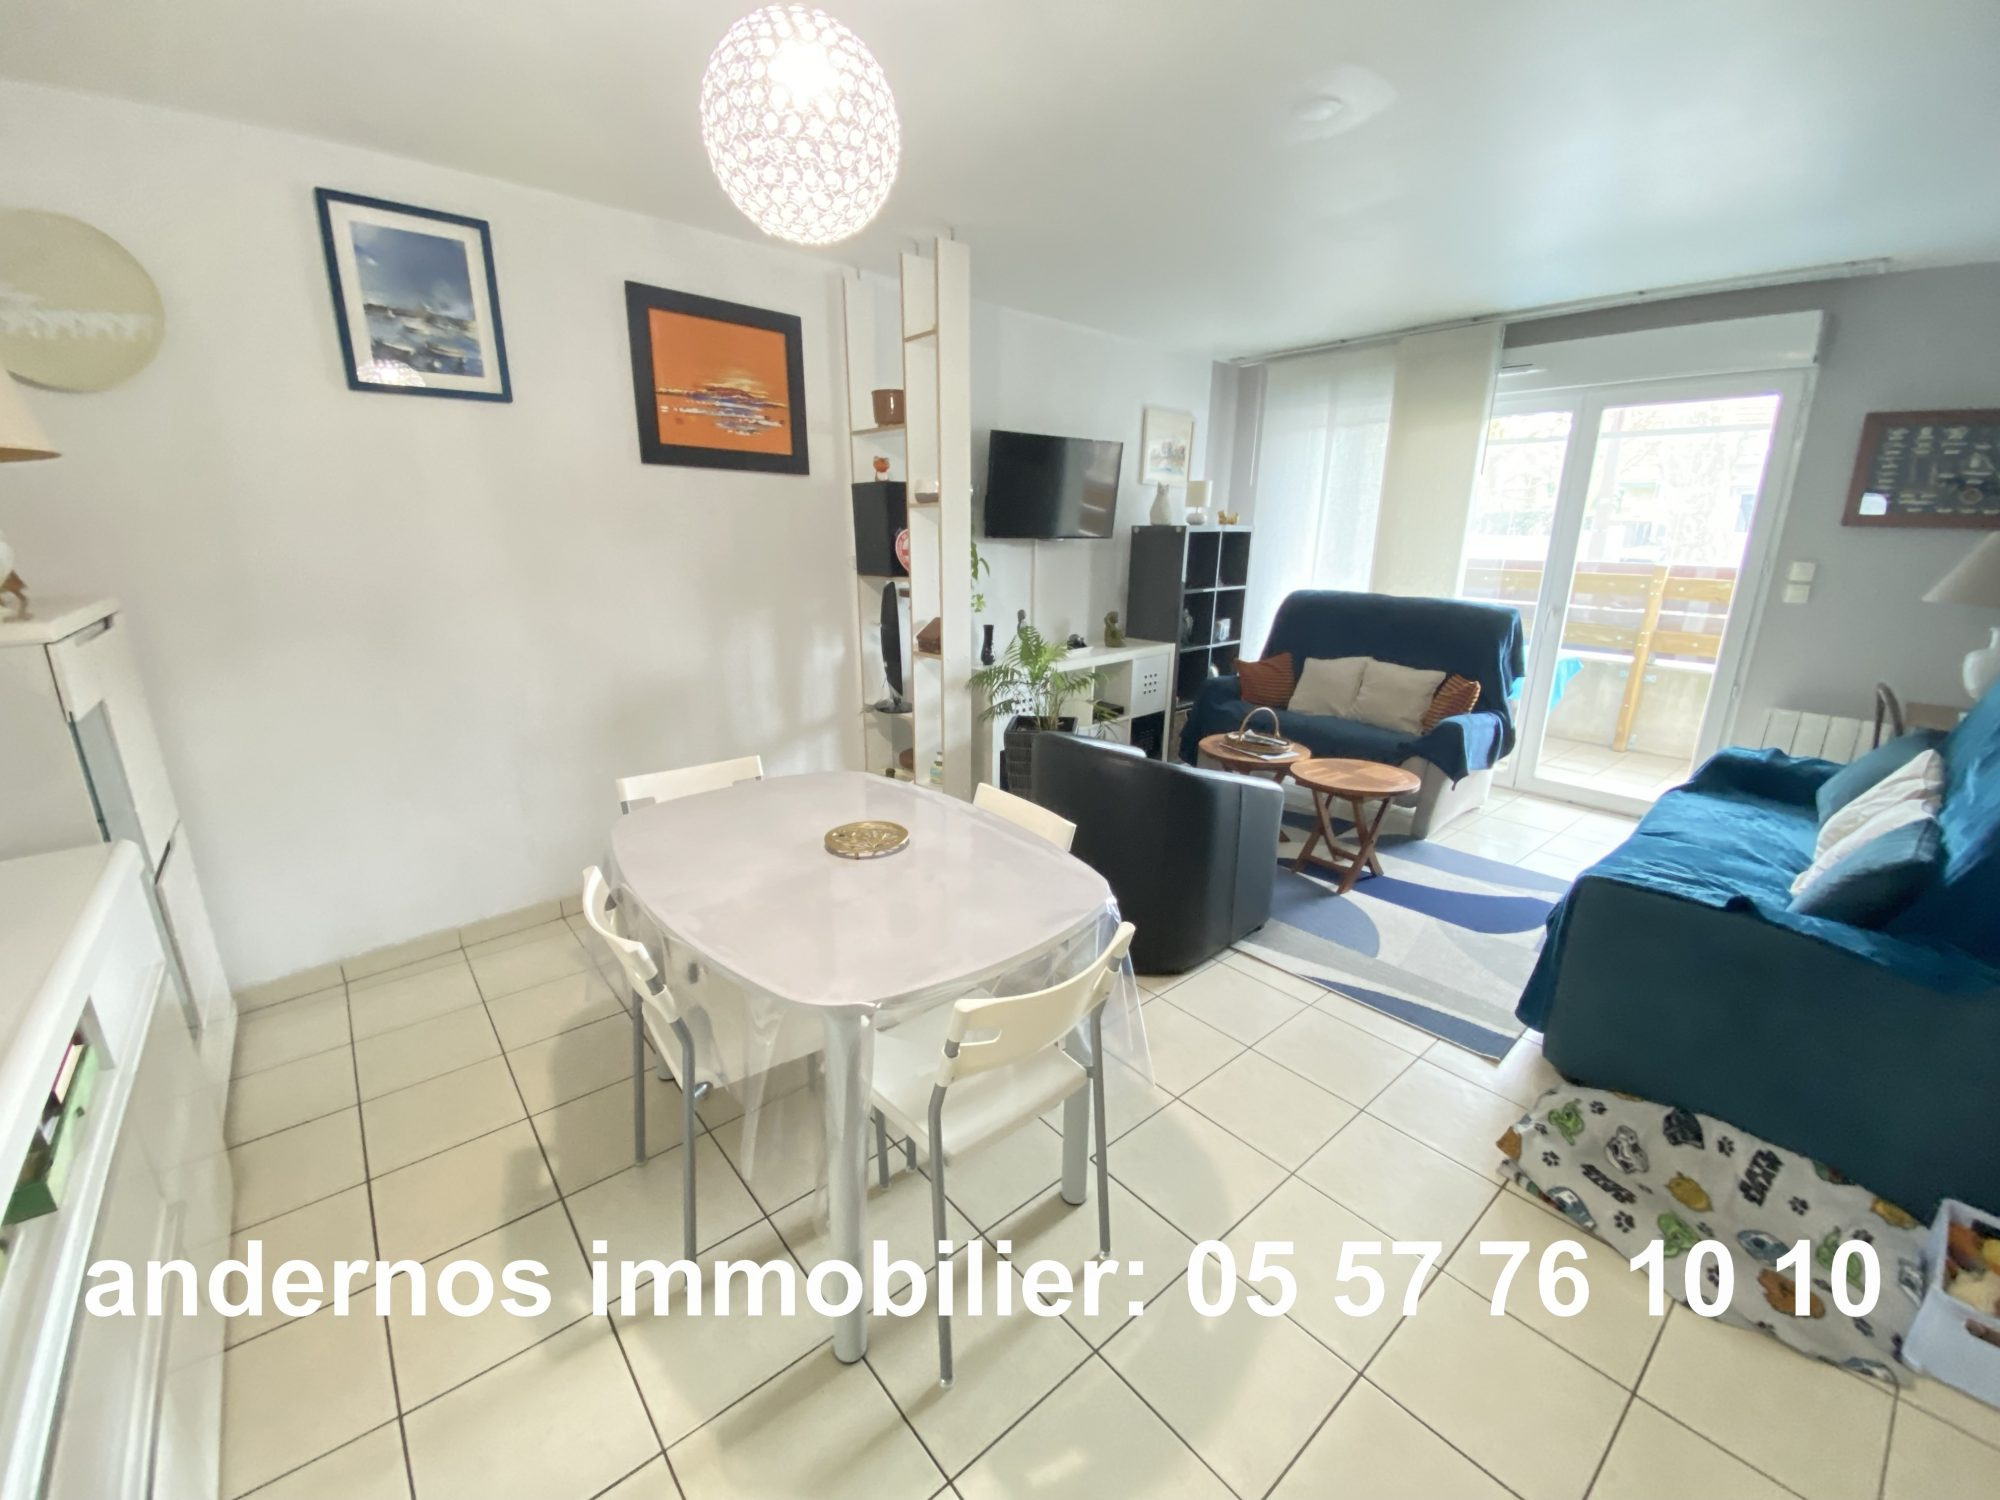 Vente Appartement 70m² 3 Pièces à Andernos-les-Bains (33510) - Andernos Immobilier